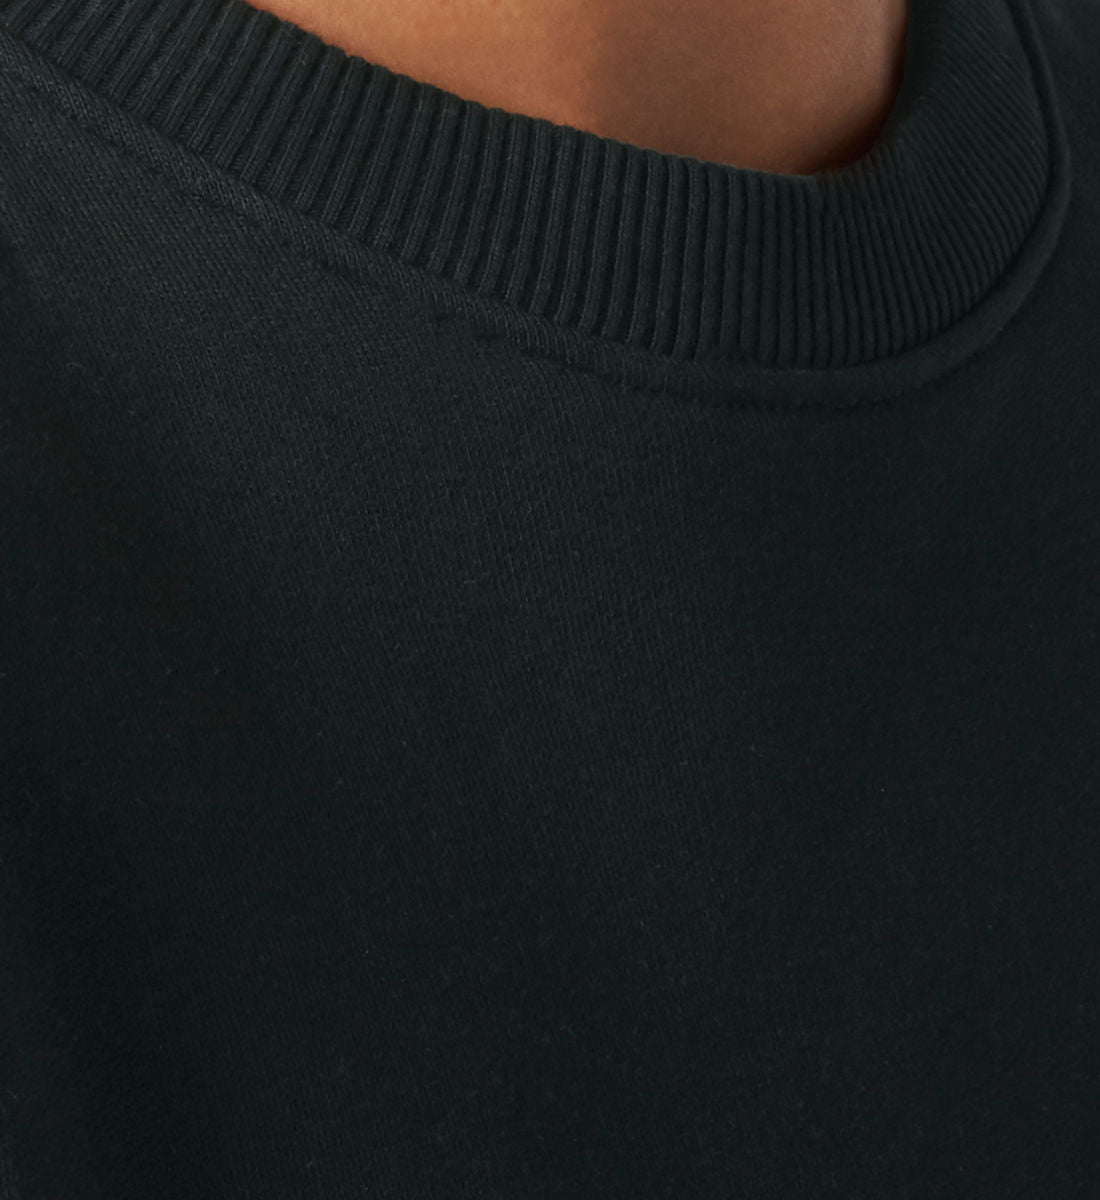 Schwarzes Sweatshirt Unisex für Frauen und Männer bedruckt mit dem Design der Roger Rockawoo Kollektion Try To Be Human